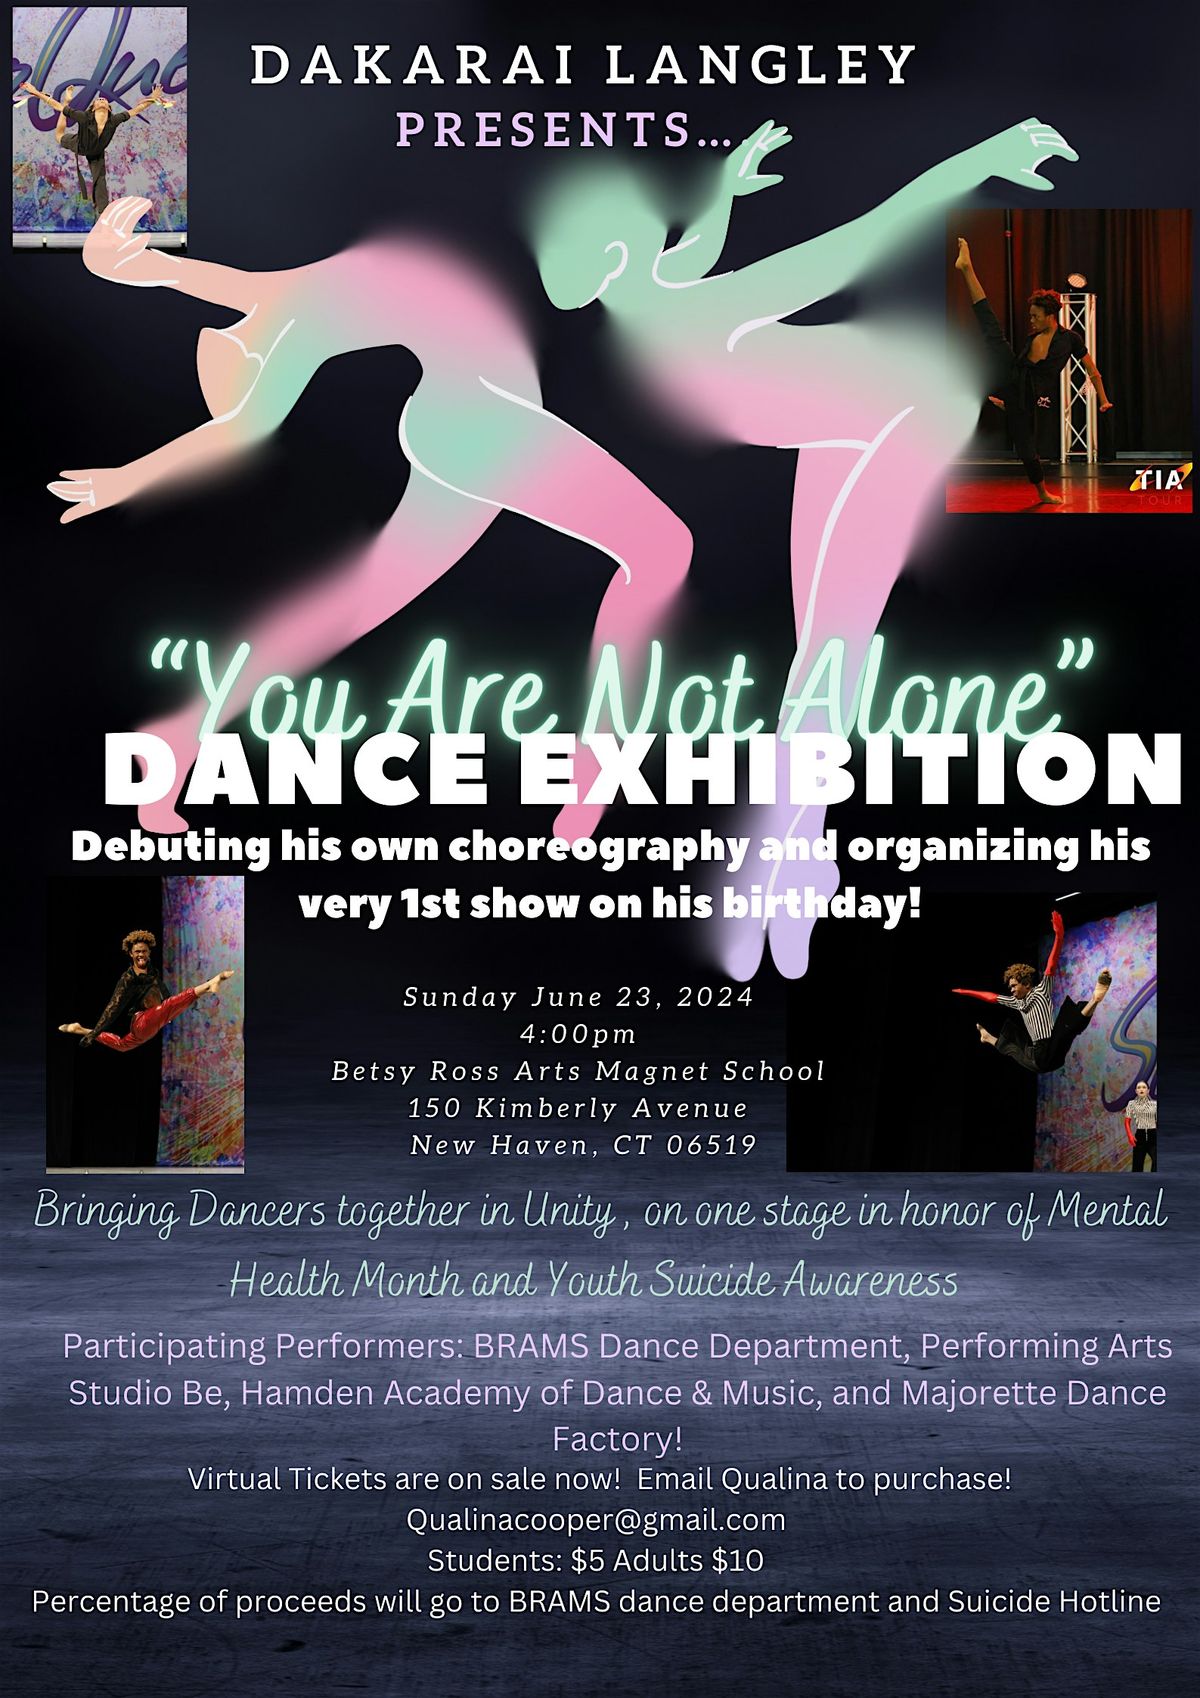 \u201cYou Are Not Alone\u201d Dance Exhibition by Dakarai Langley